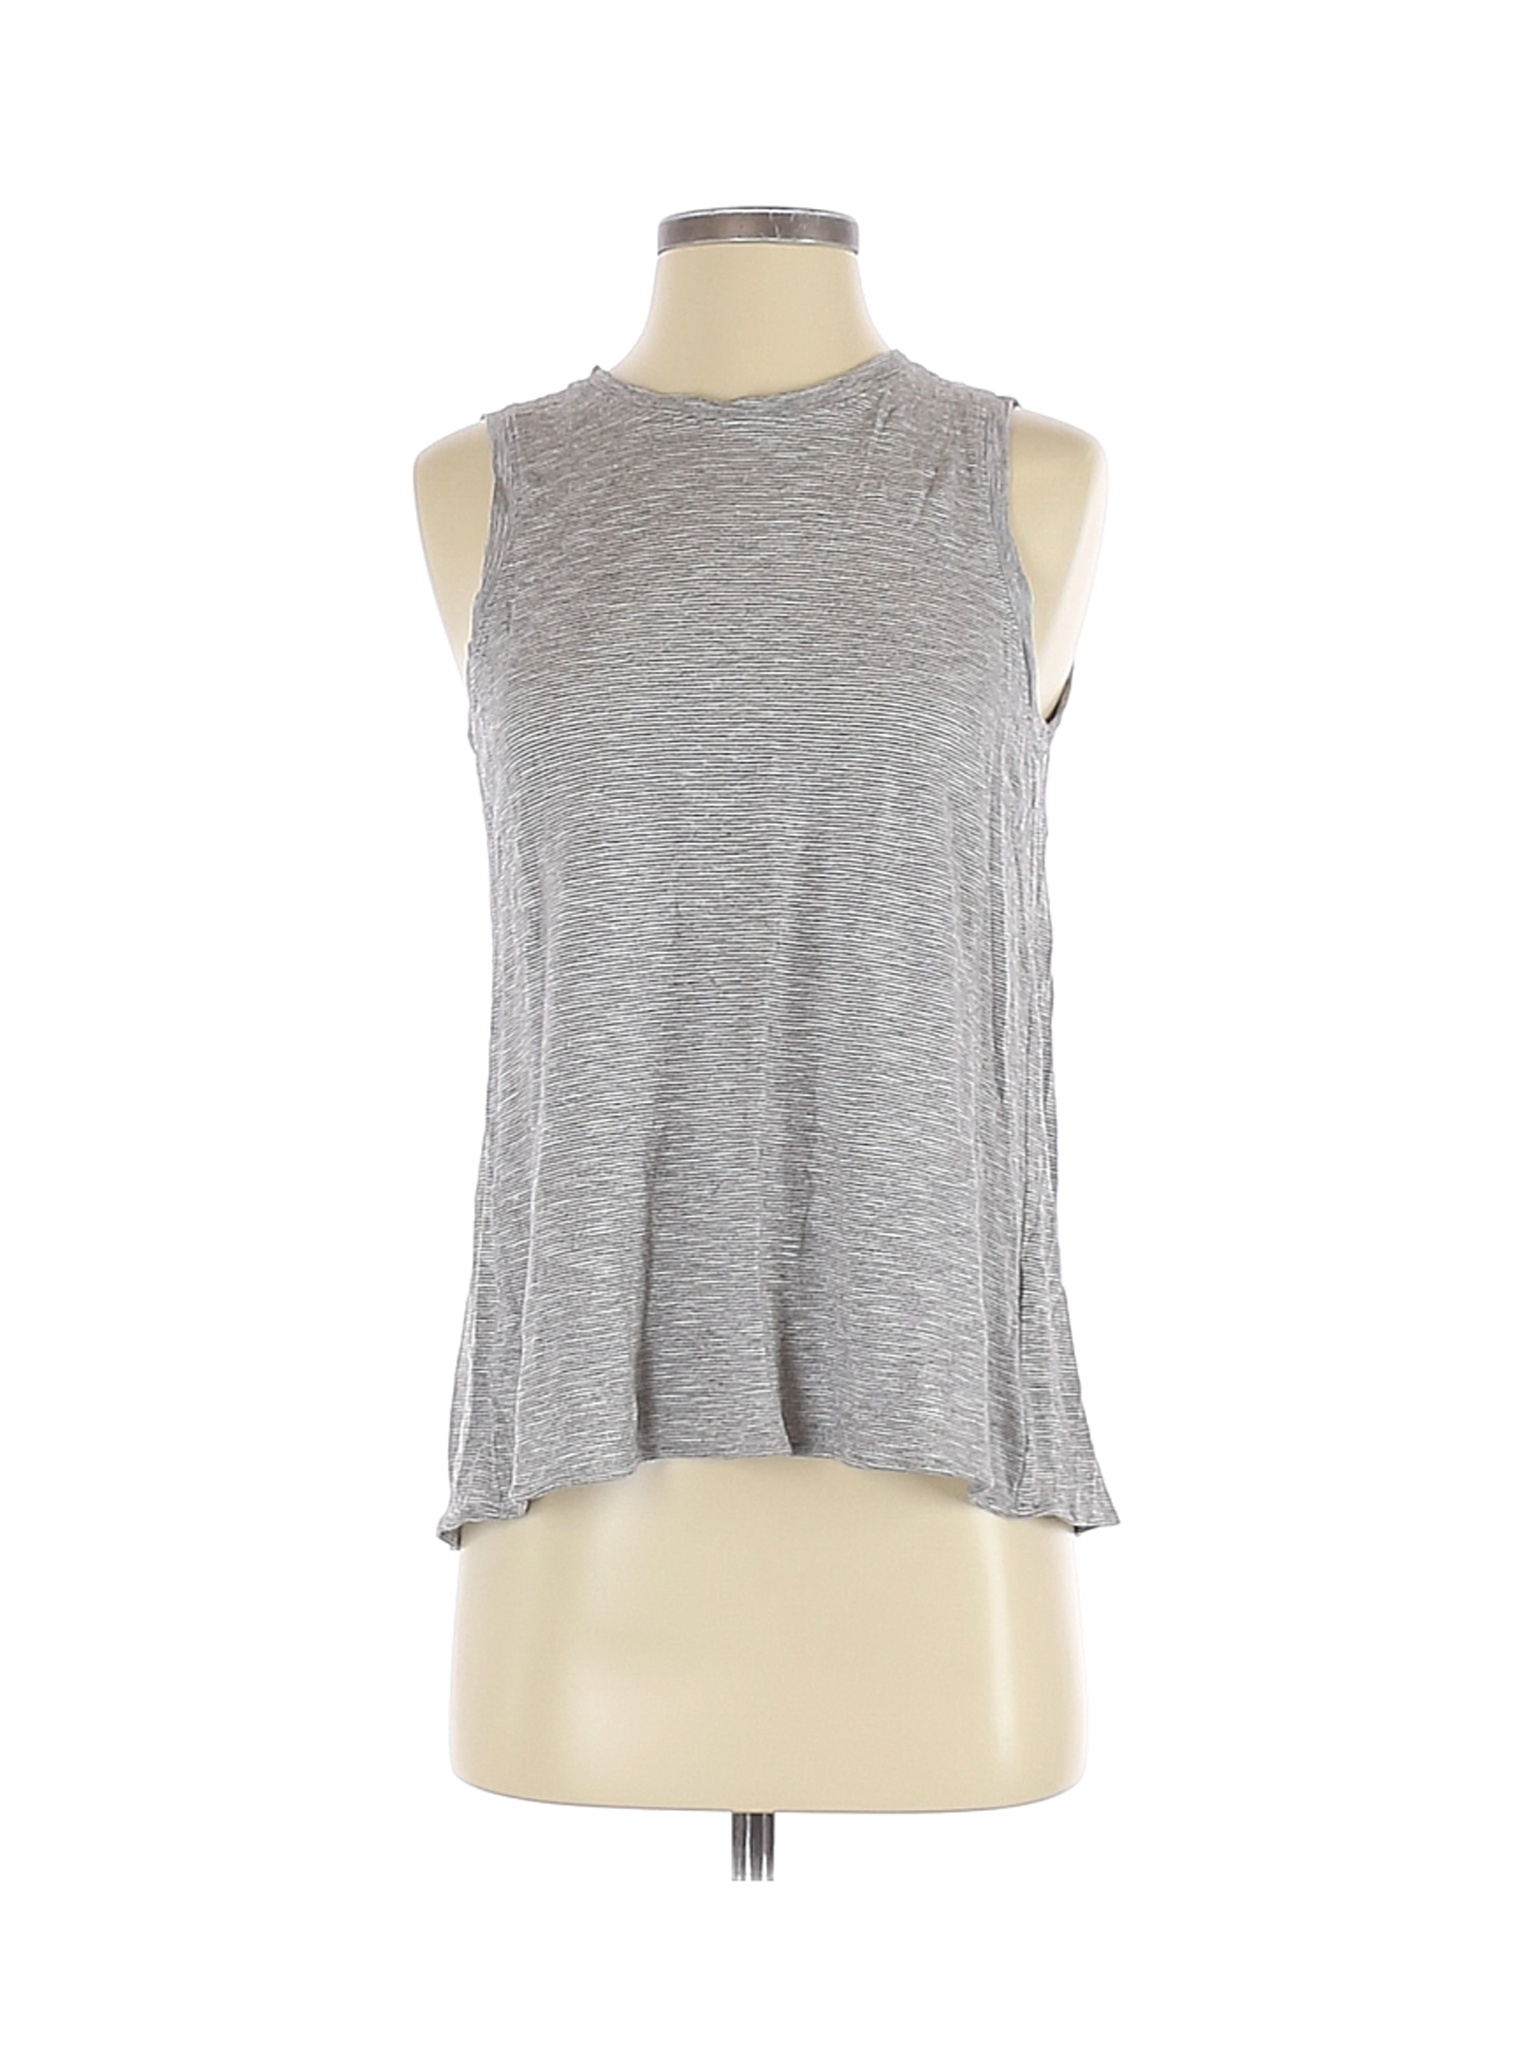 Marine Layer Women Gray Sleeveless T-Shirt S | eBay